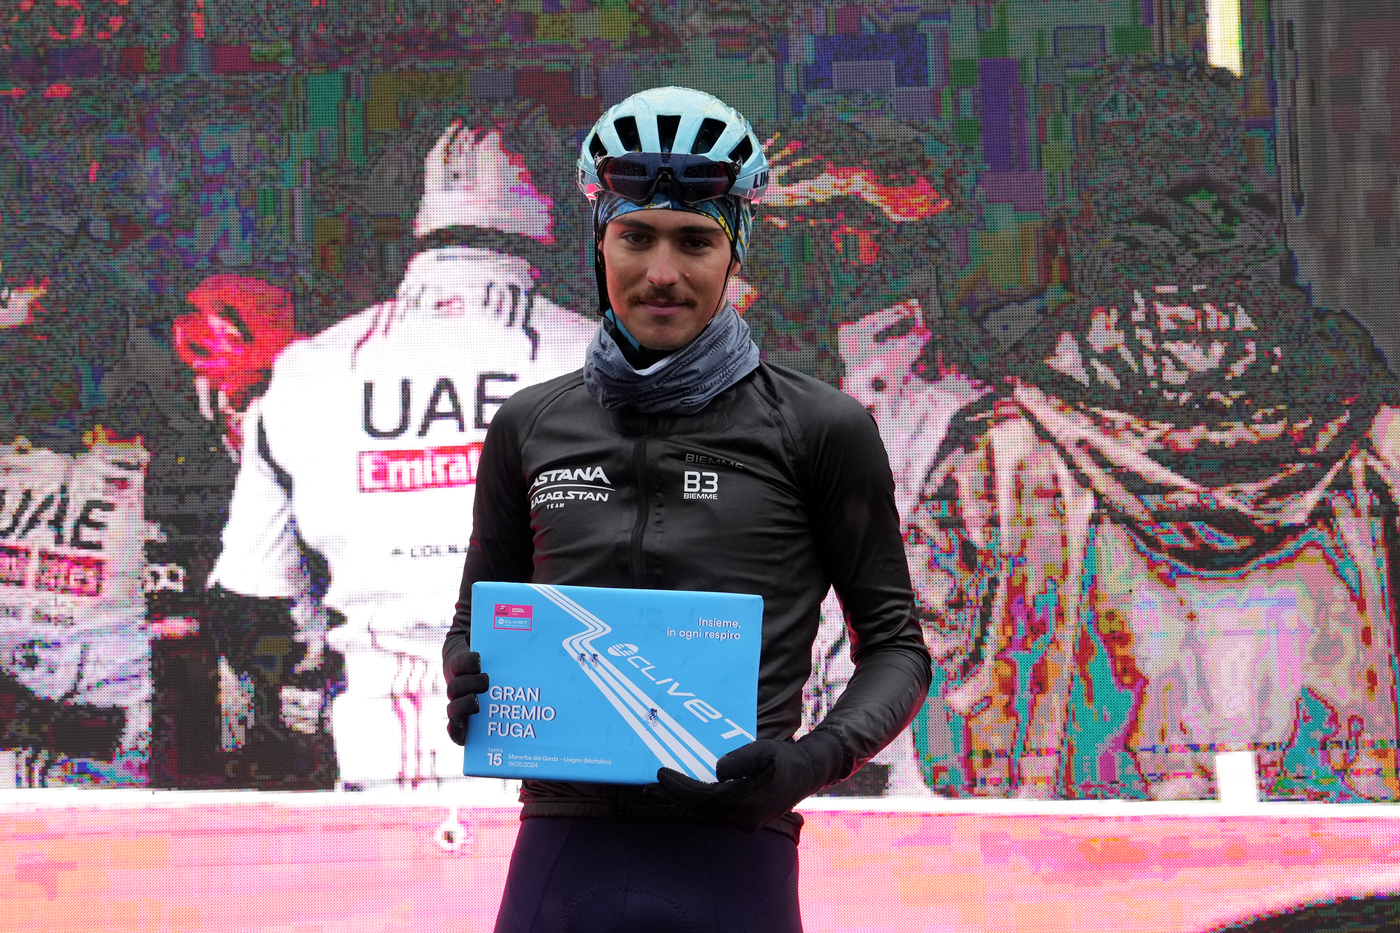 Christian Scaroni dopo il quarto posto al Giro d’Italia: “Pensiamo giorno per giorno, ci riproverò”